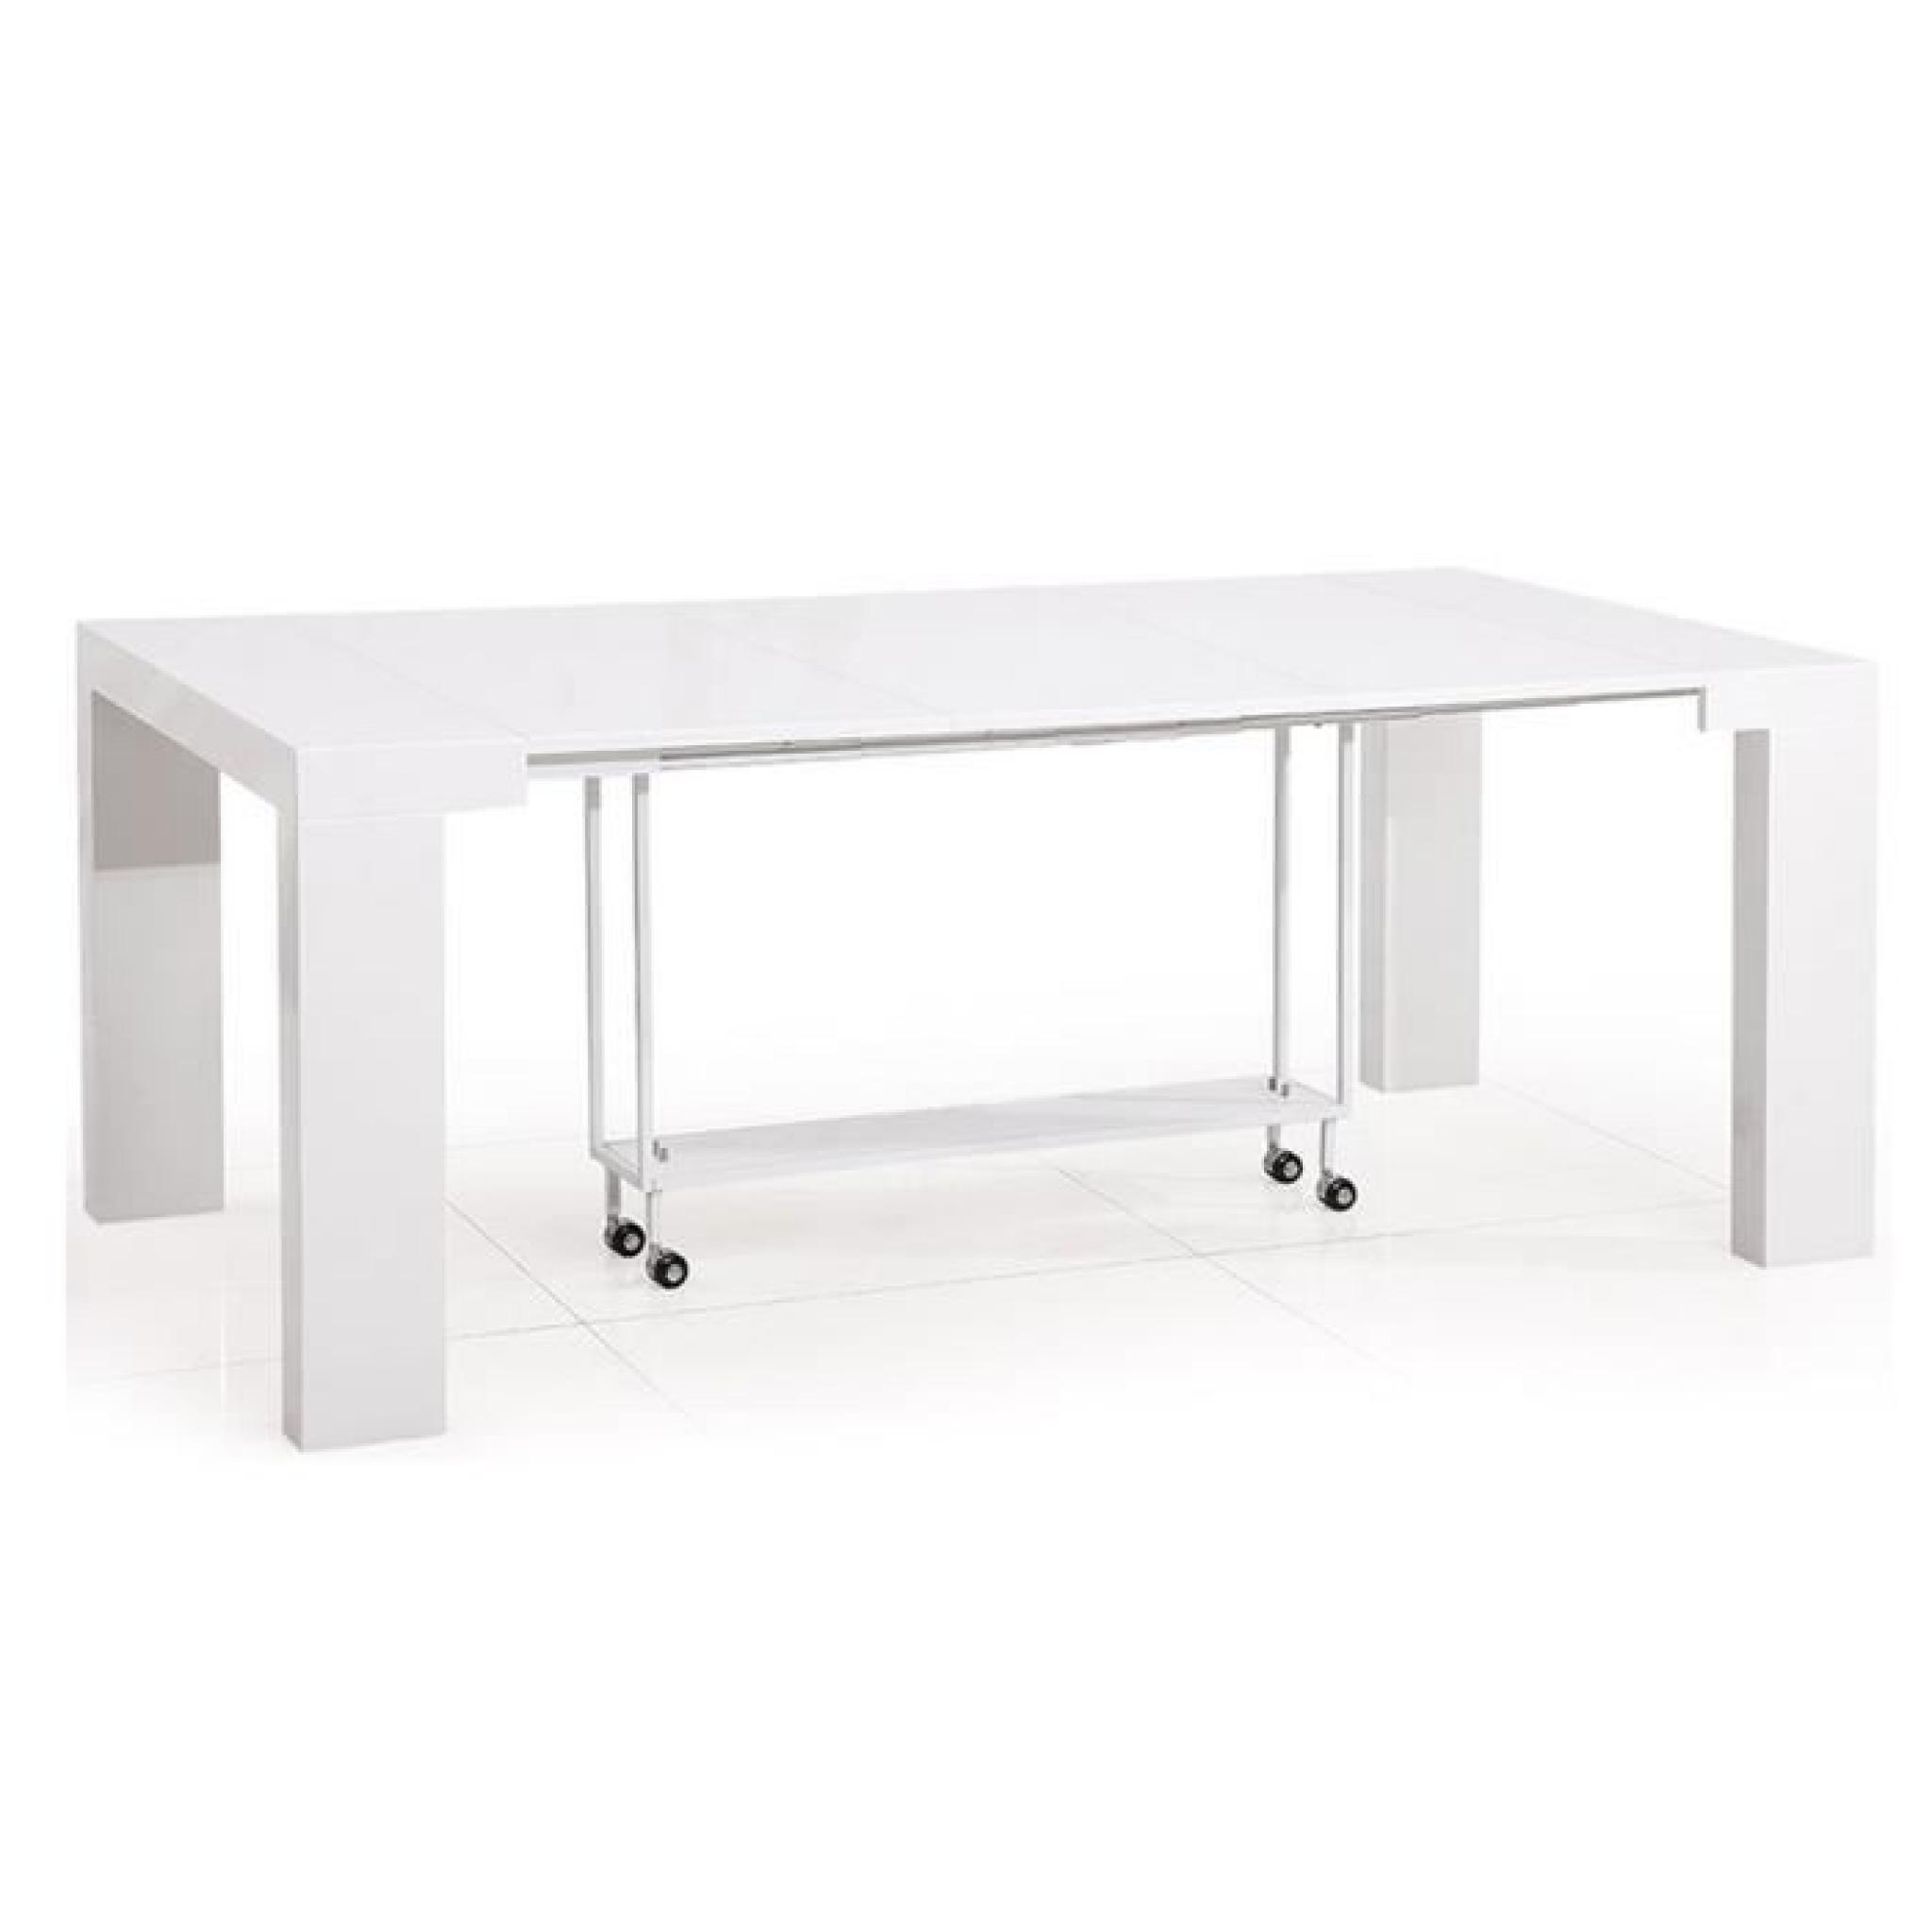 Table console blanche / Bois MDF laqué Lamancha pas cher